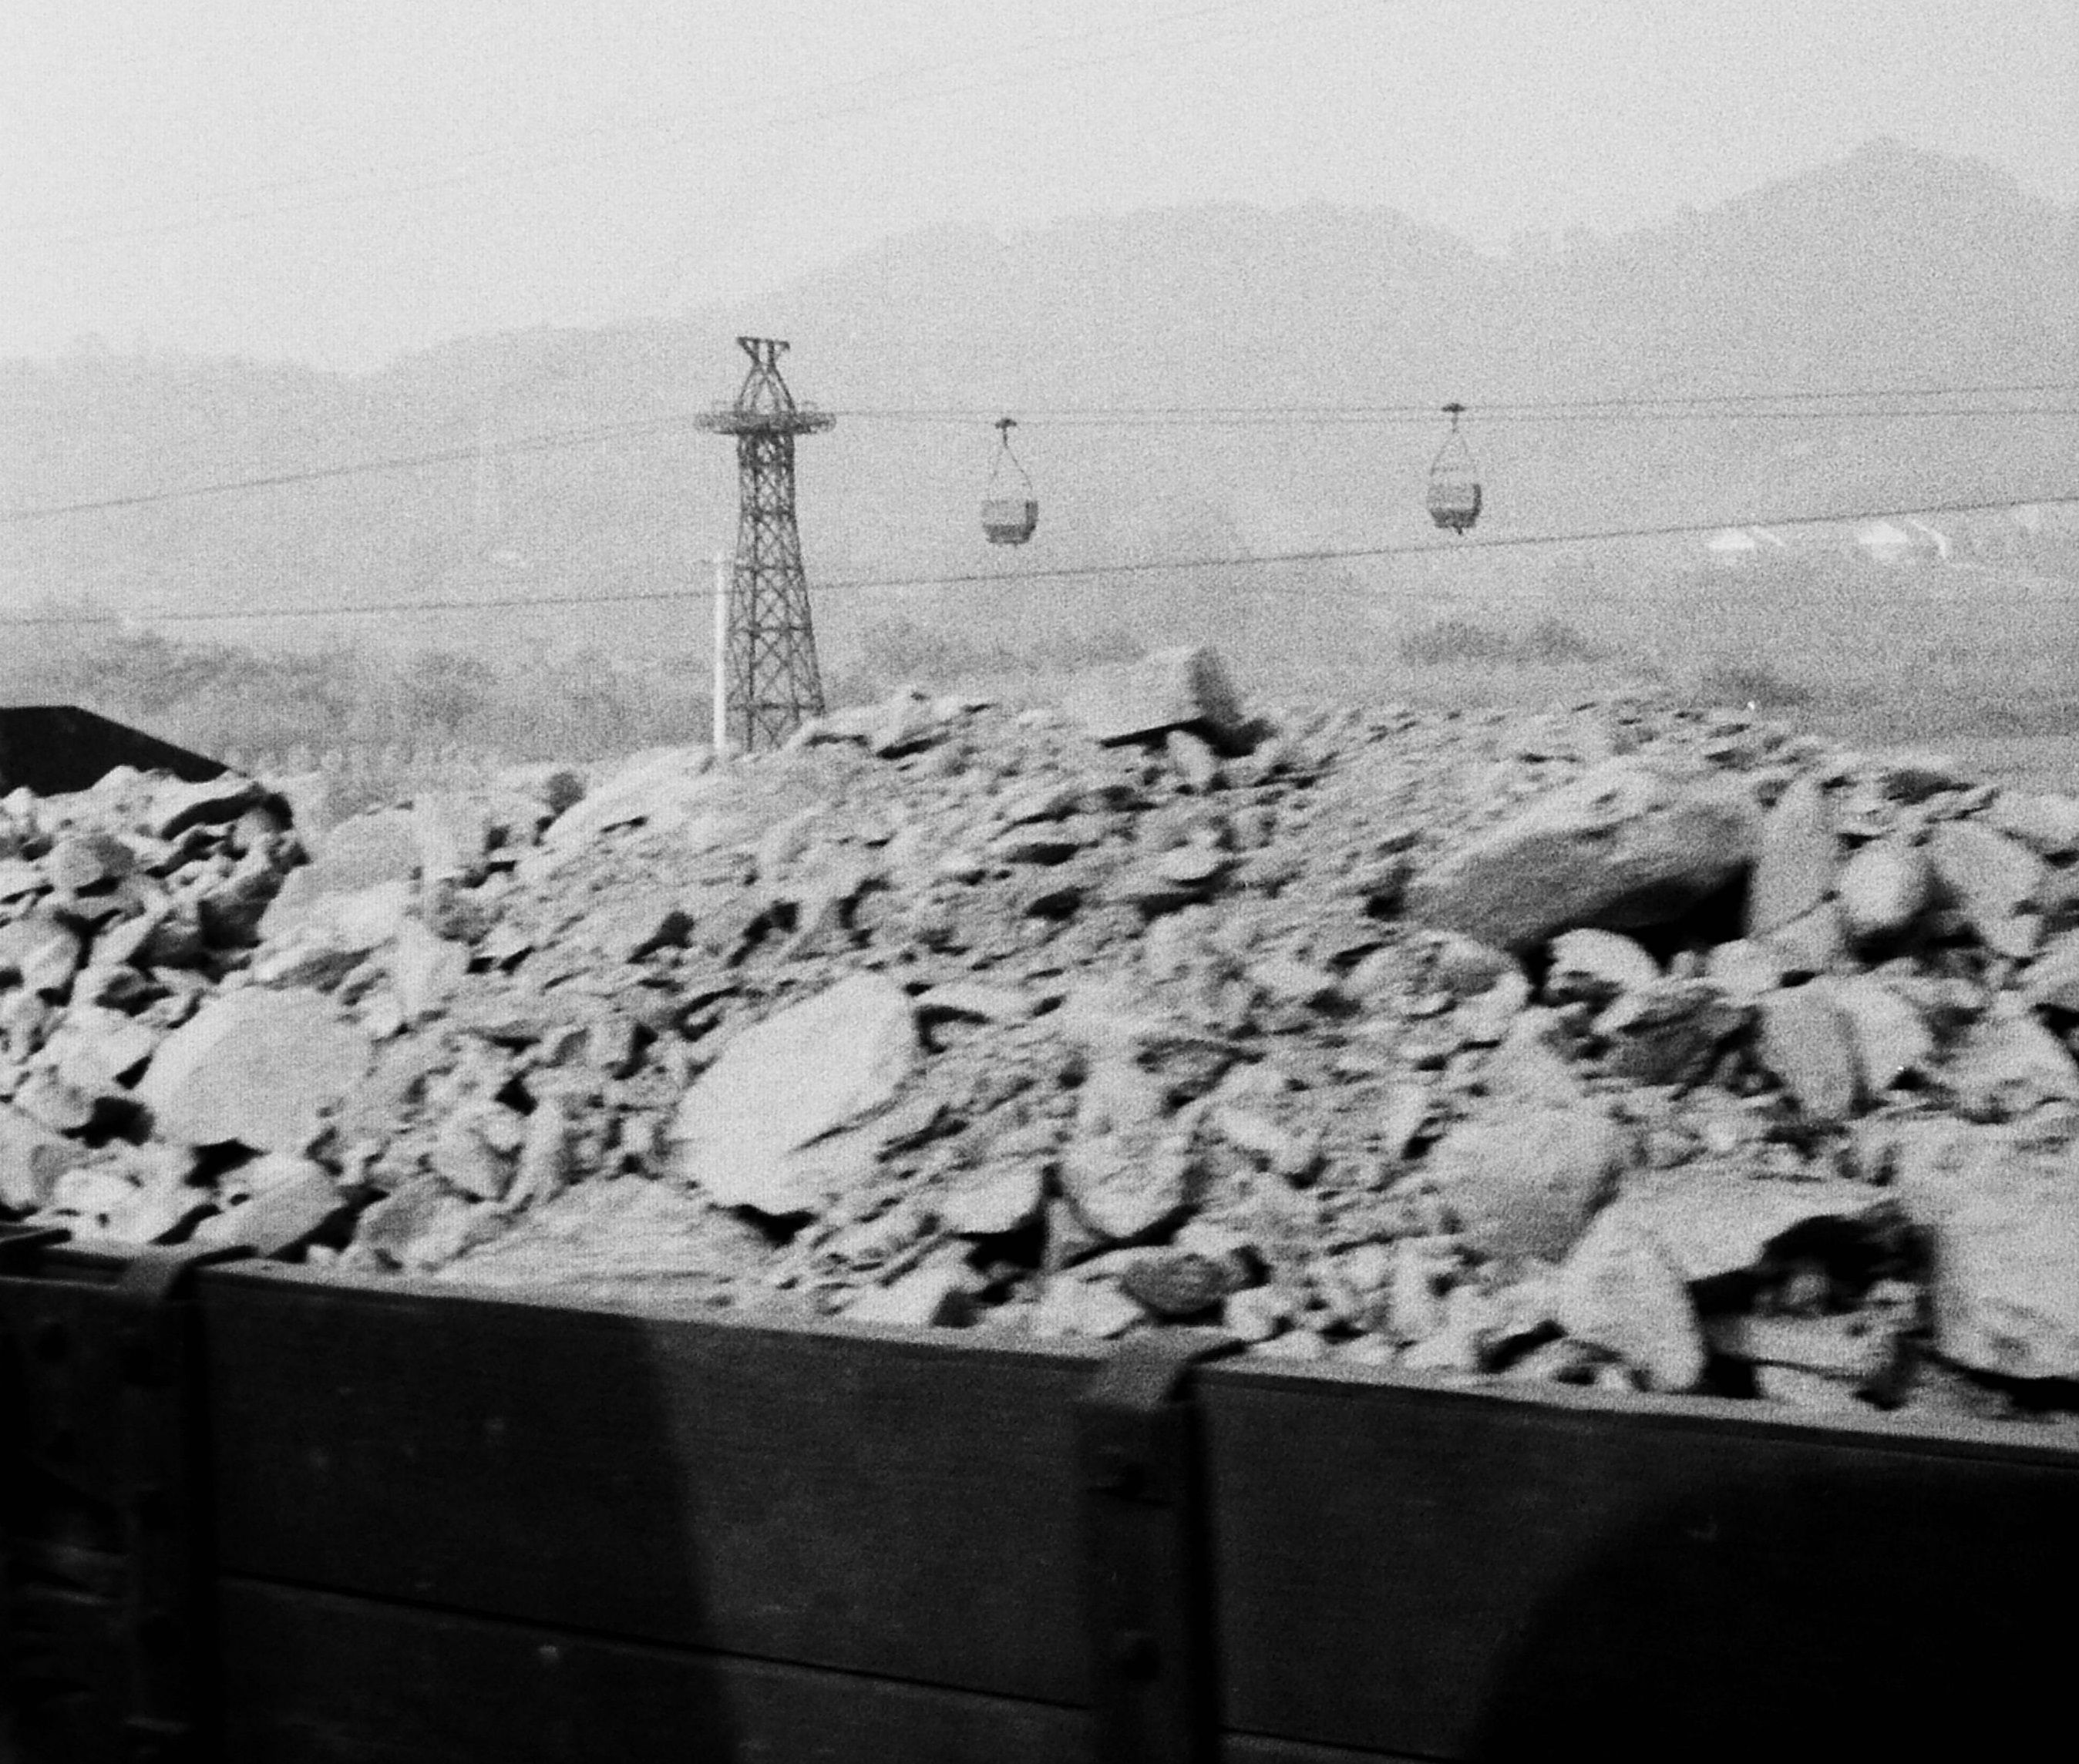 写真11　小川郷駅の頁岩を積んだ貨車と背後に架空索道(昭和43年9月、いわき市撮影)